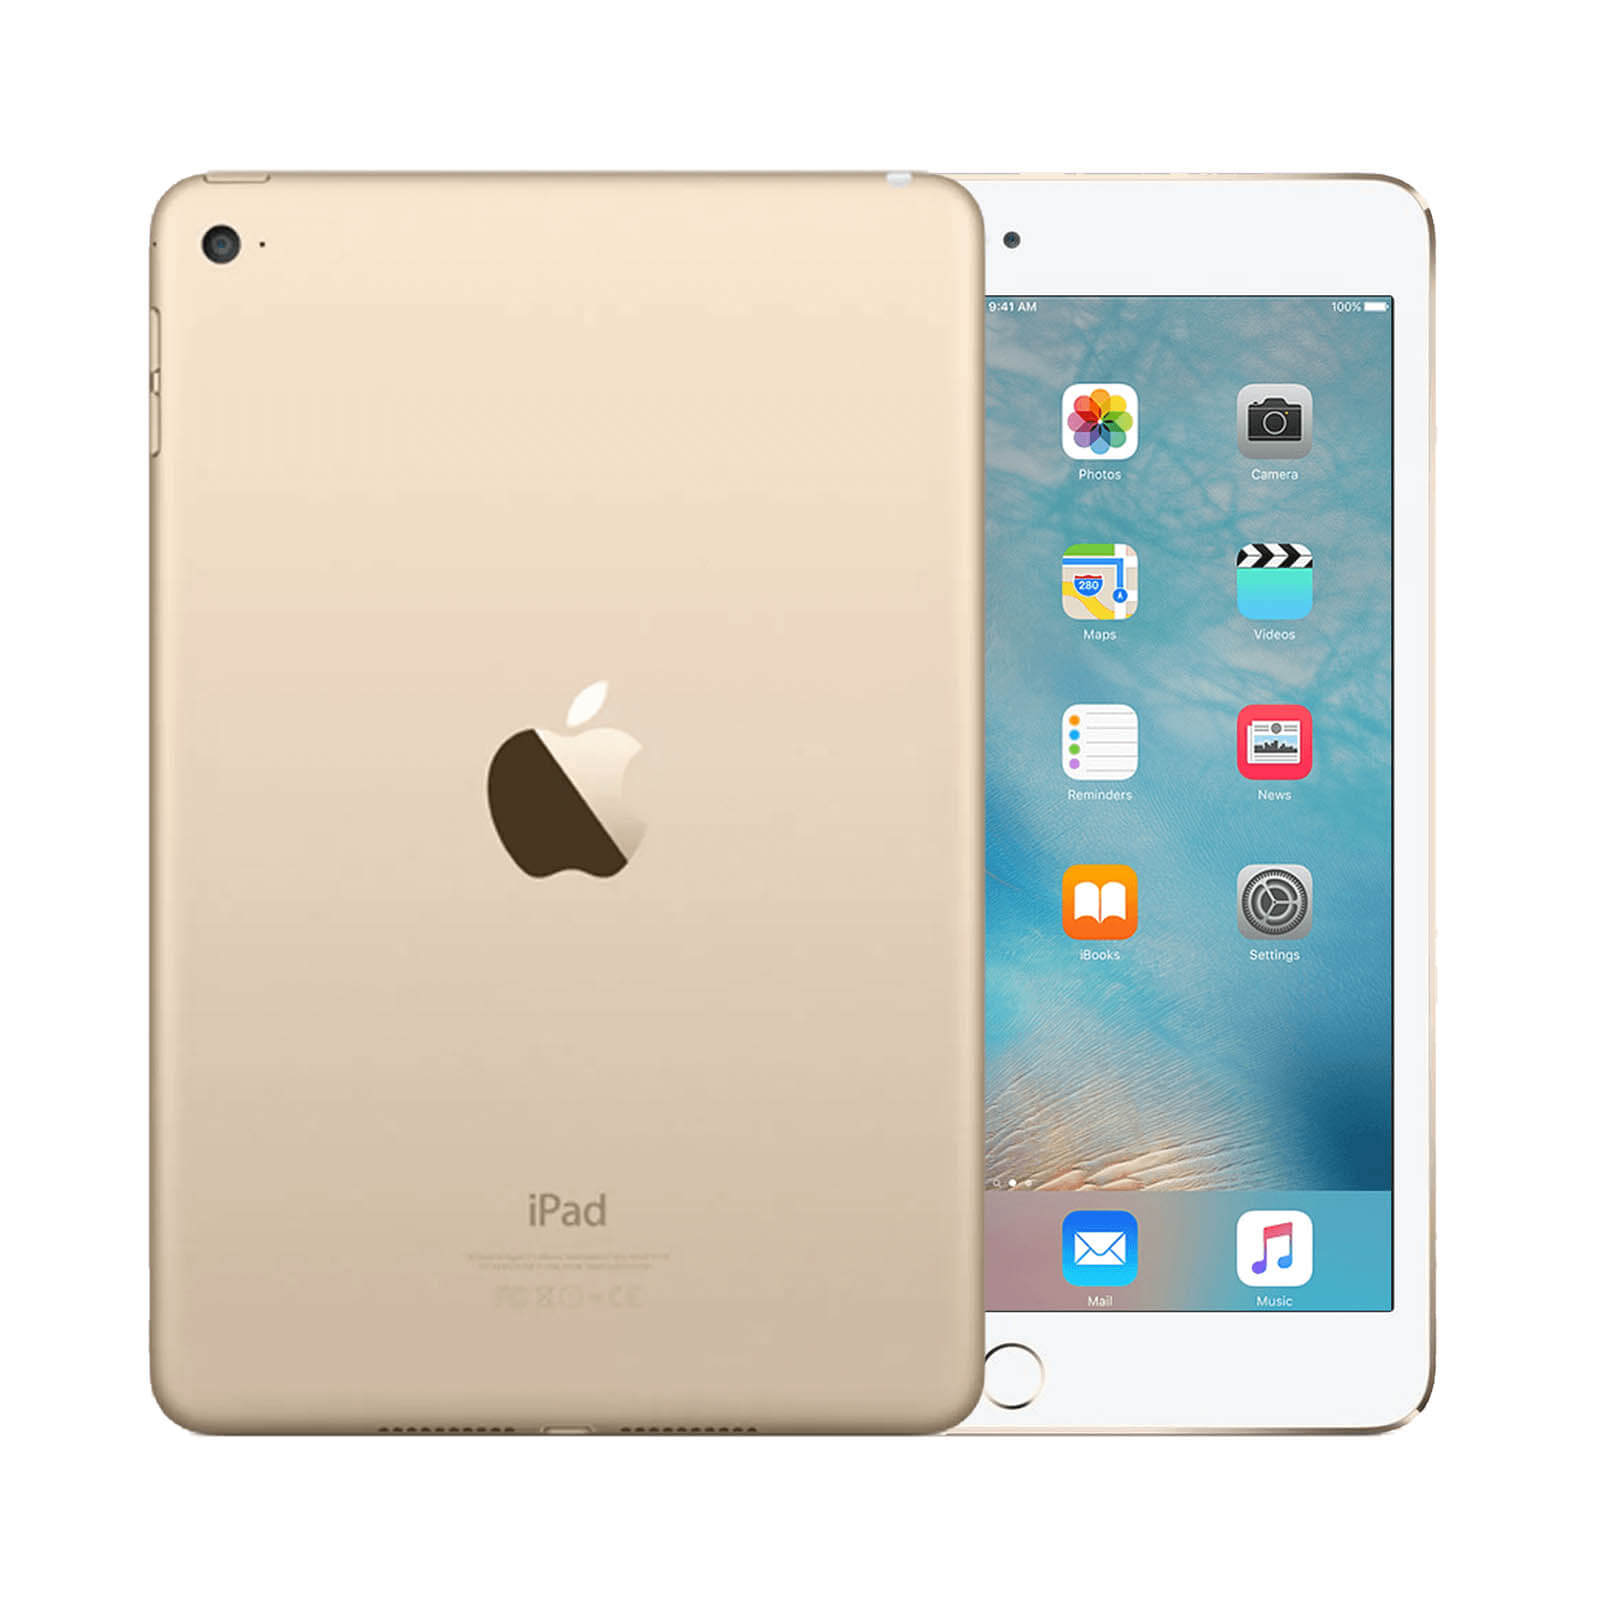 Apple iPad Mini 4 32GB Gold WiFi - Very Good 32GB Gold Very Good